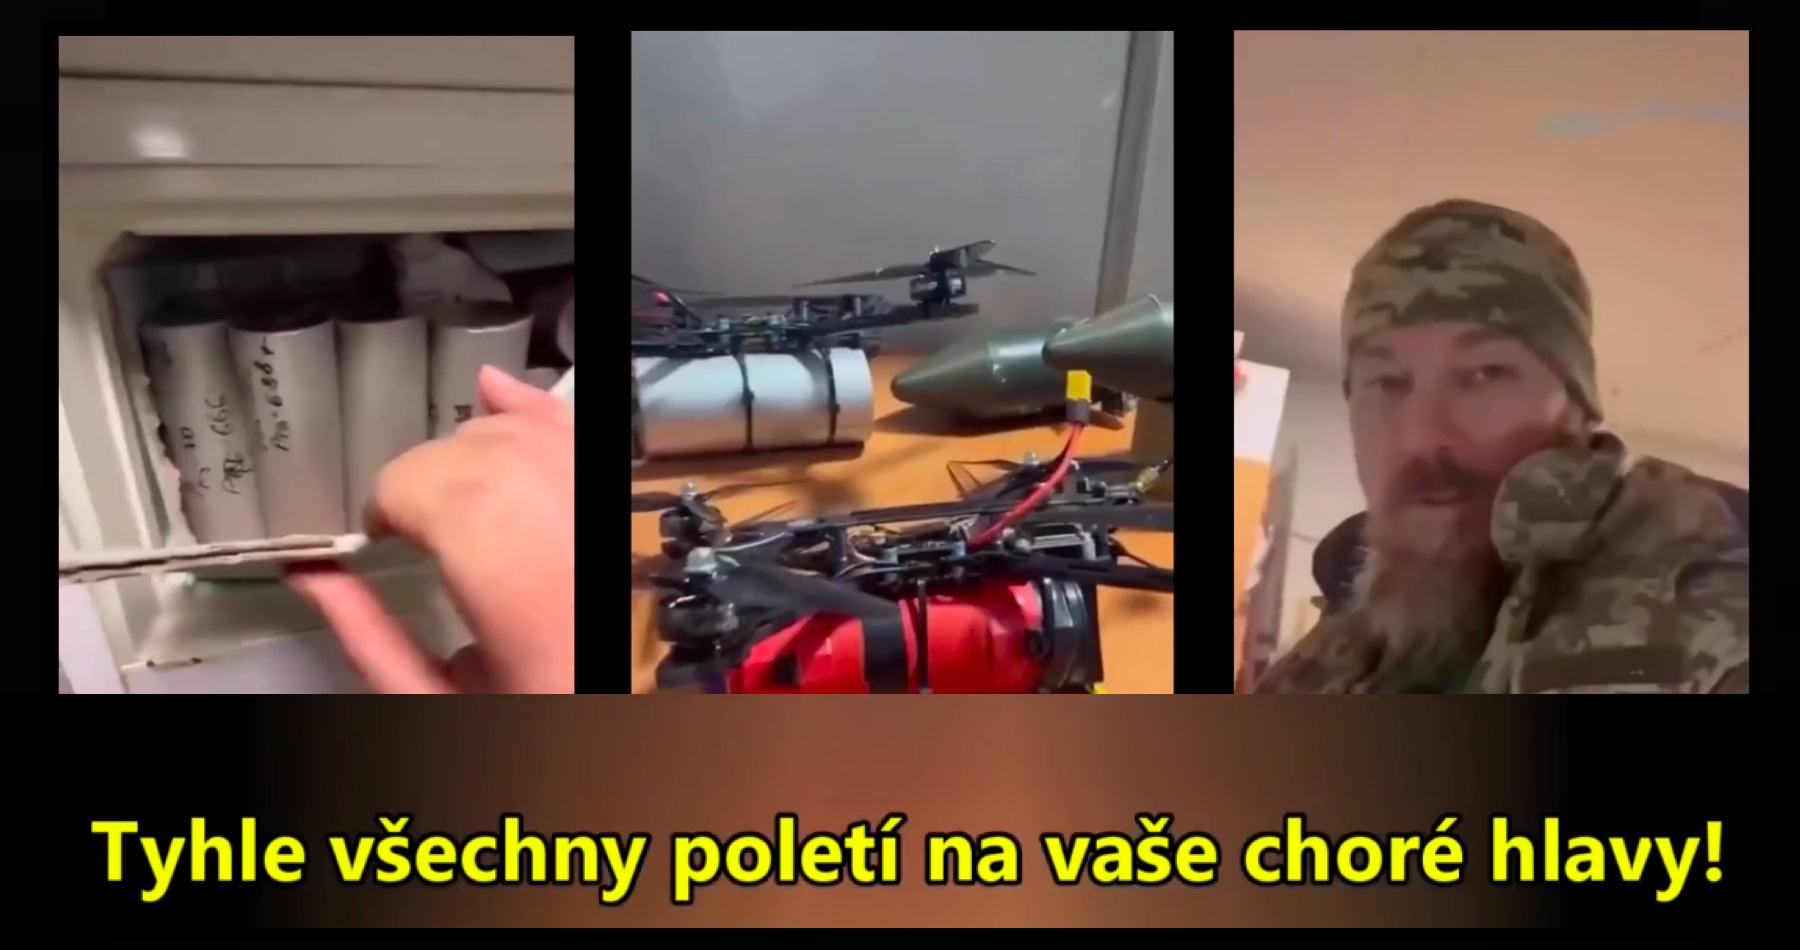 VIDEO: Ukrajina se dopustila válečného zločinu a nasadila u Bachmutu nervově-paralytické zbraně! Ukrajinci dokonce natočili účinky nervové látky na ruského vojáka, který se zmítal v křečích a nakonec se utopil v potoce! Zbraně vyrábí ukrajinská skupina Shaman Group a používá zakázanou látku “CK” kyanogen chlorid! Předák skupiny dokonce natočil výrobu těchto chemických zbraní vojáky ukrajinské armády v improvizované dílně! A rakouský podplukovník ve Vídni v diskusním panelu odhalil, že tanky pro Ukrajinu budou řídit vojáci NATO, ale až po svlečení uniforem!